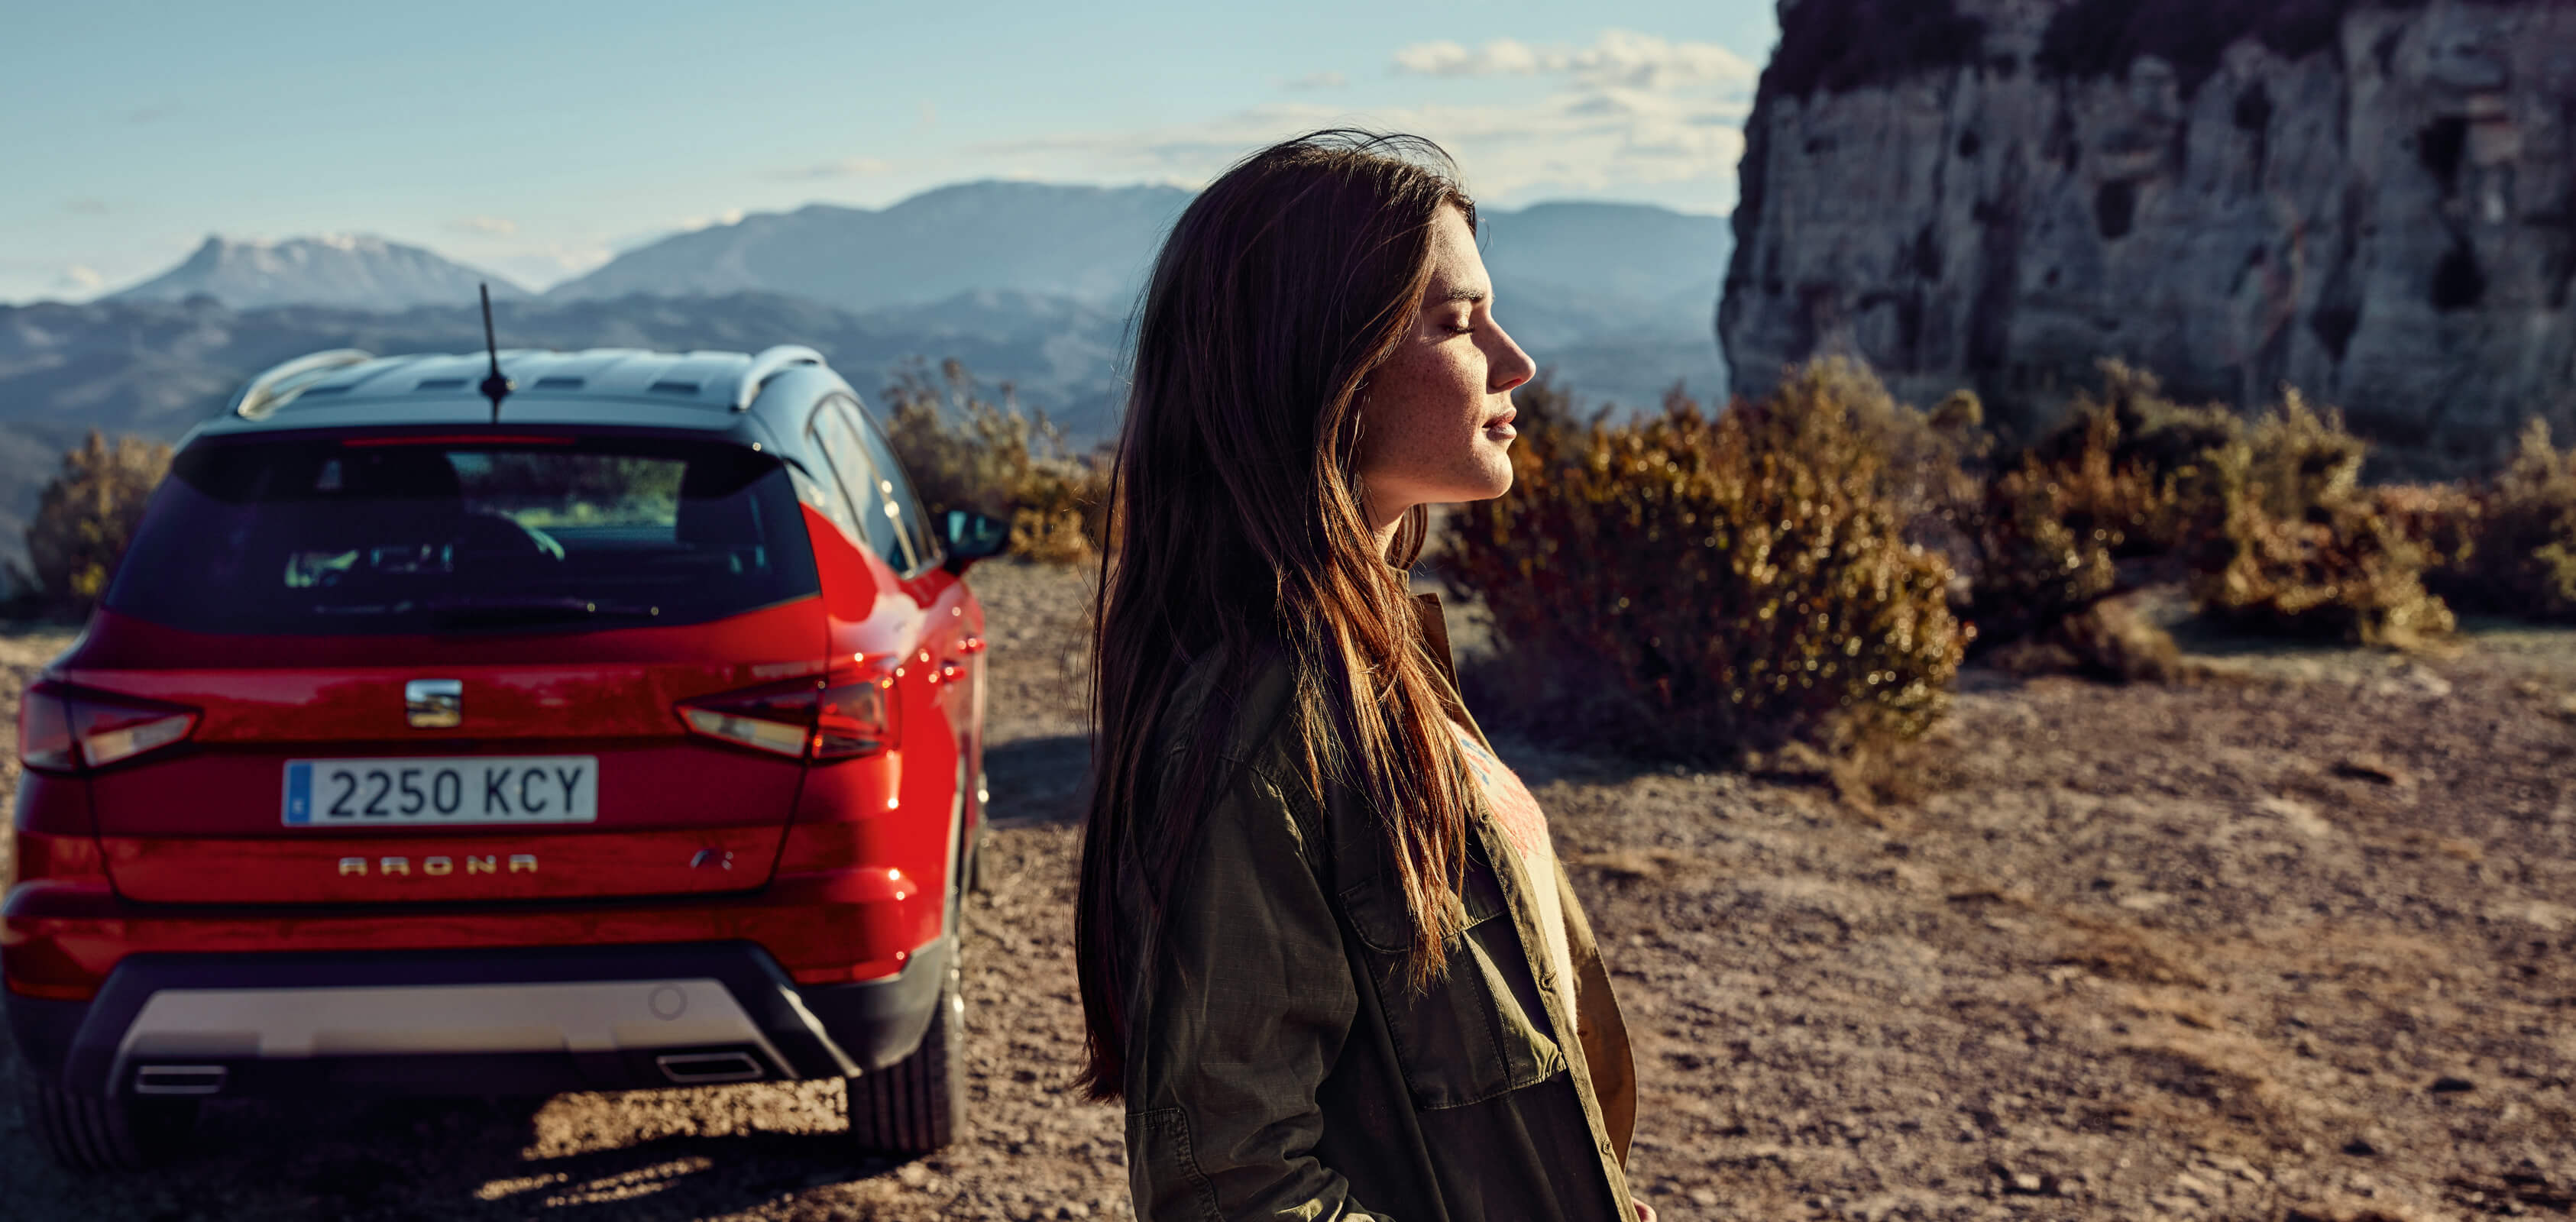 Servizi SEAT per vetture nuove – vista posteriore di un SUV crossover SEAT Arona parcheggiato in un deserto con un profilo di donna